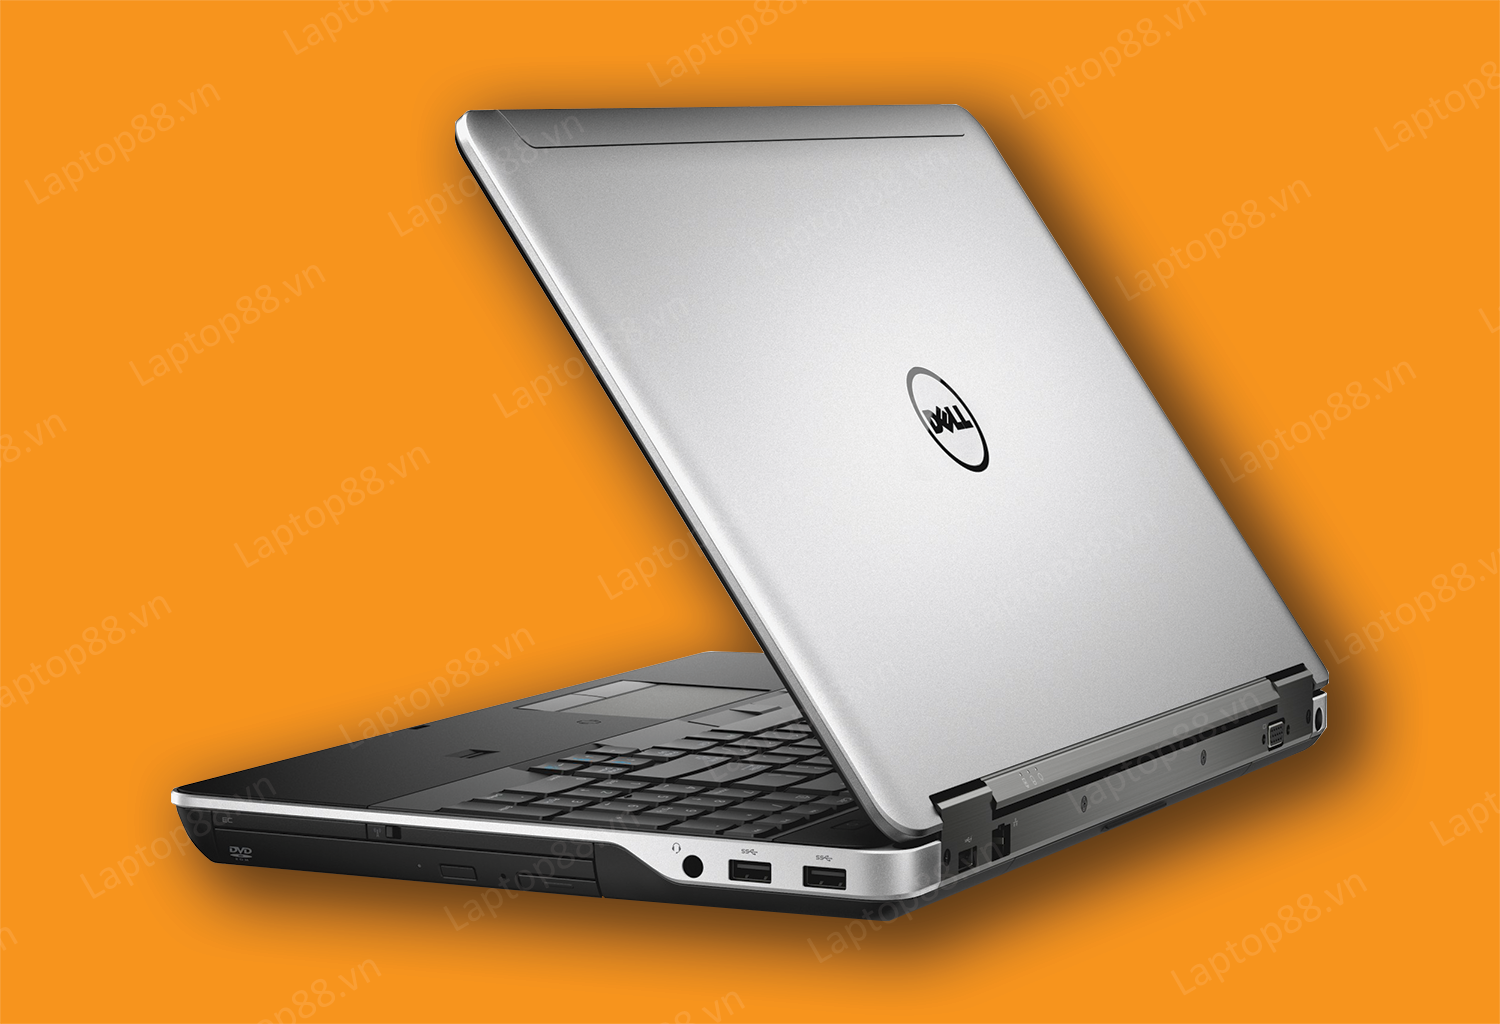 Dell Latitude E6540 - Laptop doanh nhân, cấu hình CỰC KHỦNG